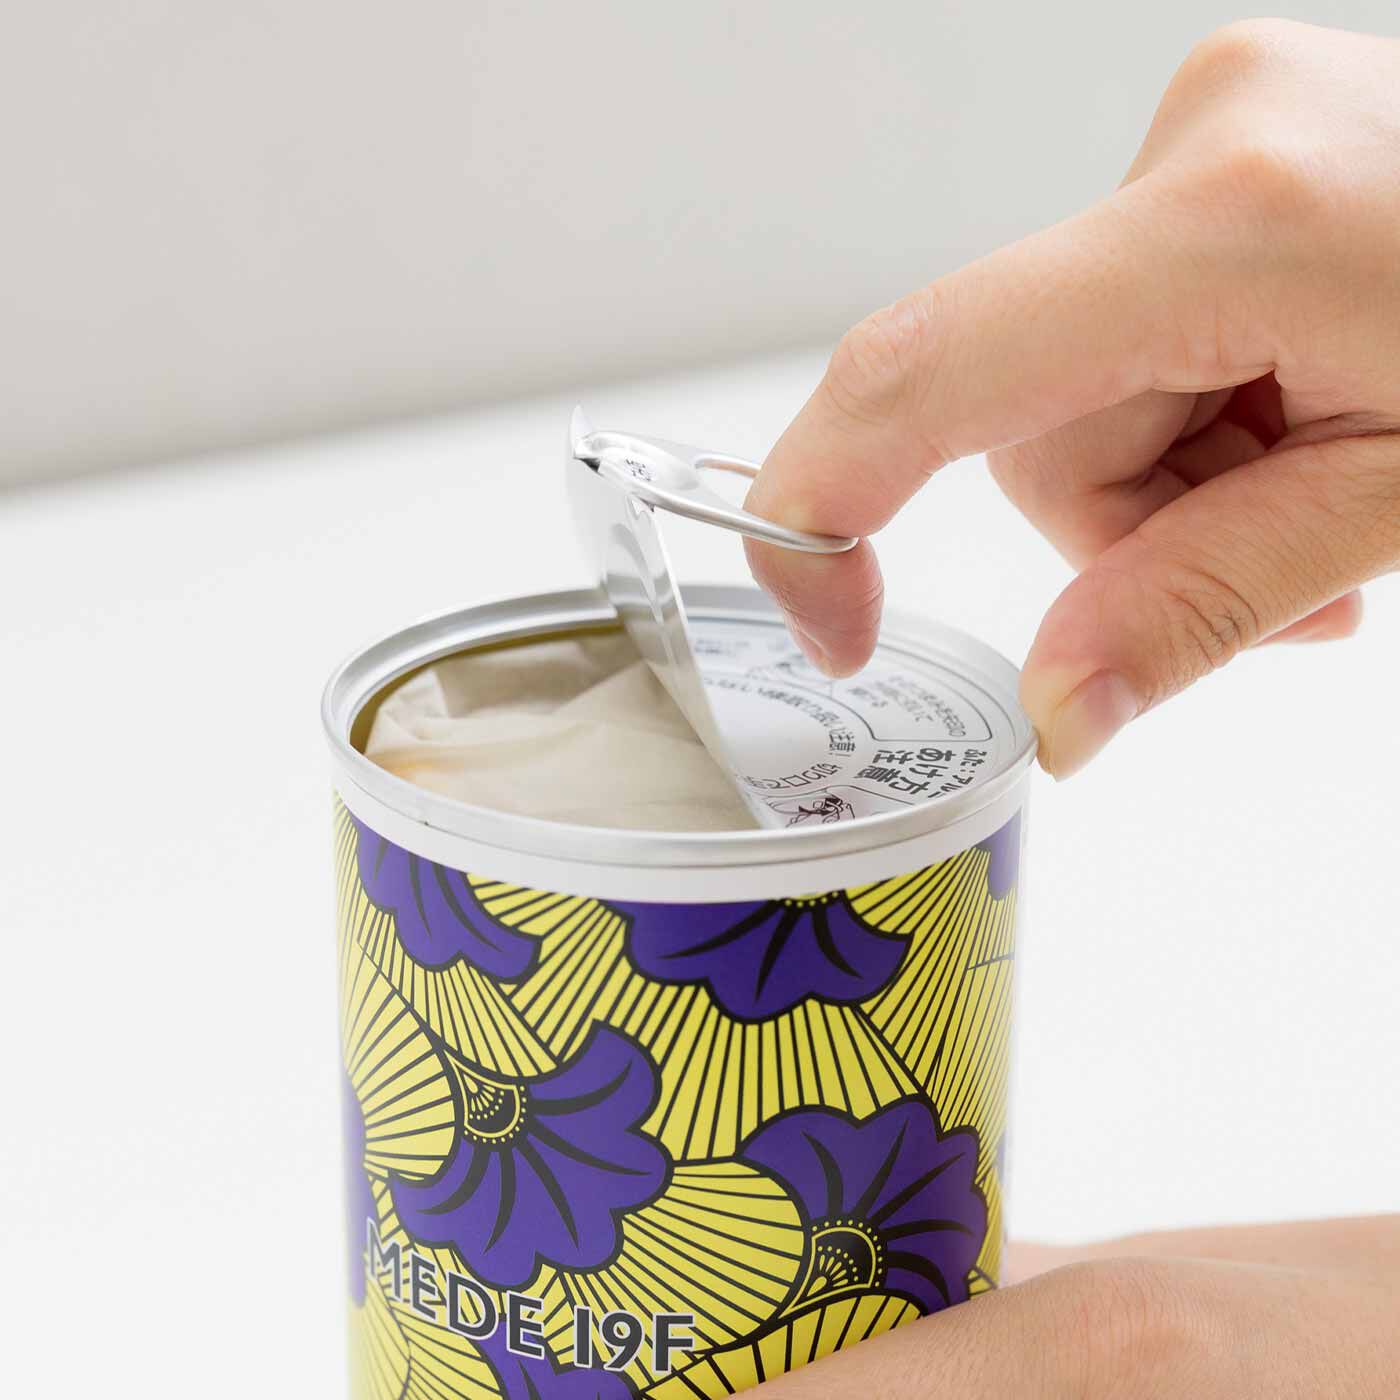 フェリシモメリー|ART meets MEDE19F 非常食にもなるパンの缶詰〈MOYAN〉|簡単に開けられるプルトップ缶です。